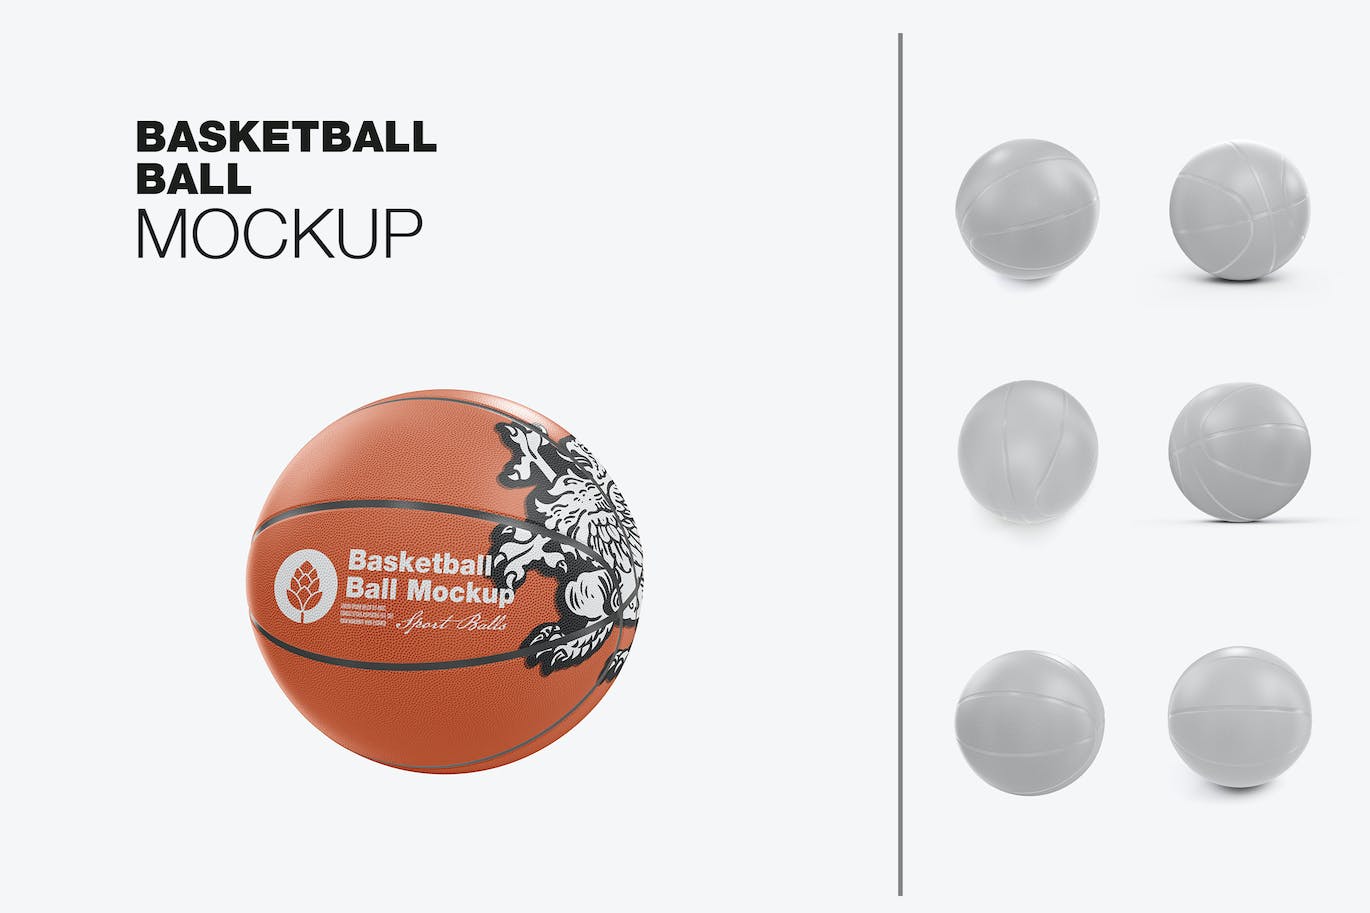 篮球运动品牌设计样机 Basketball Ball Mockup 样机素材 第1张